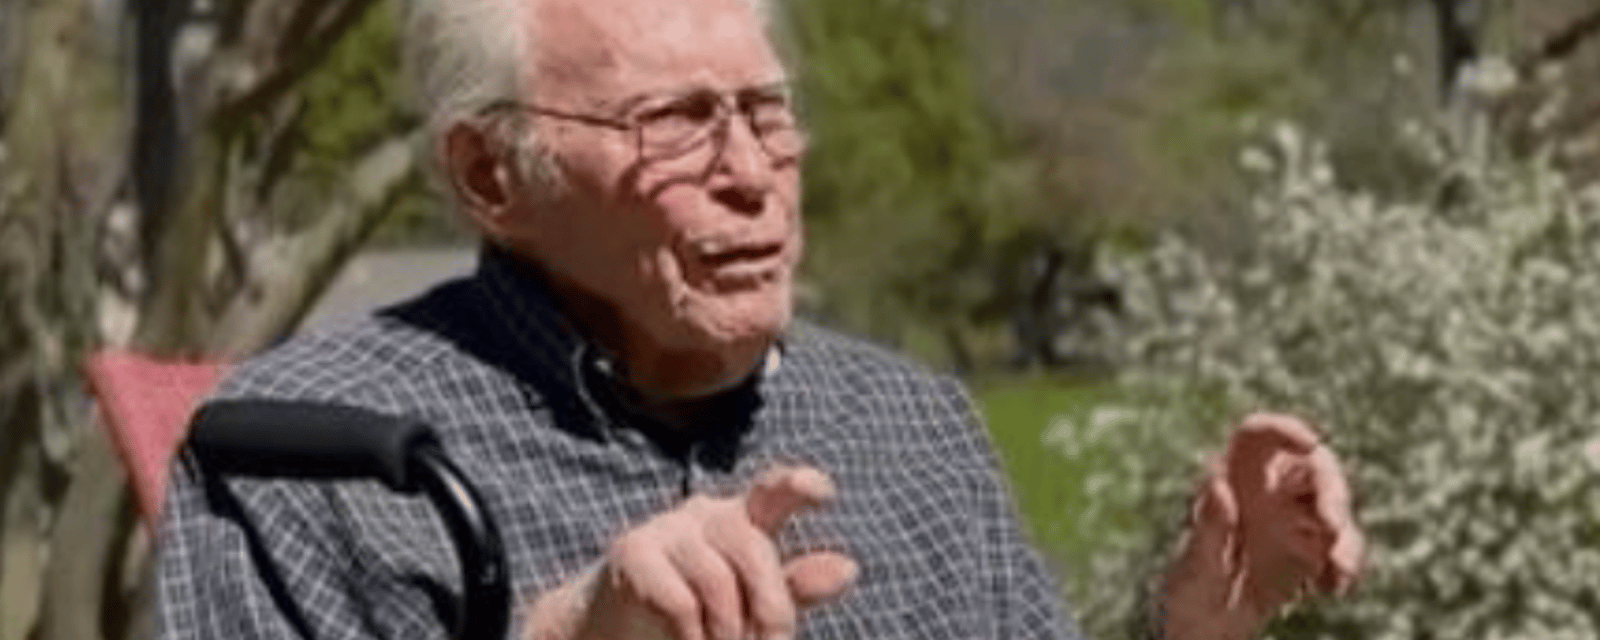 Un homme de 105 ans assiste à sa treizième éclipse solaire.